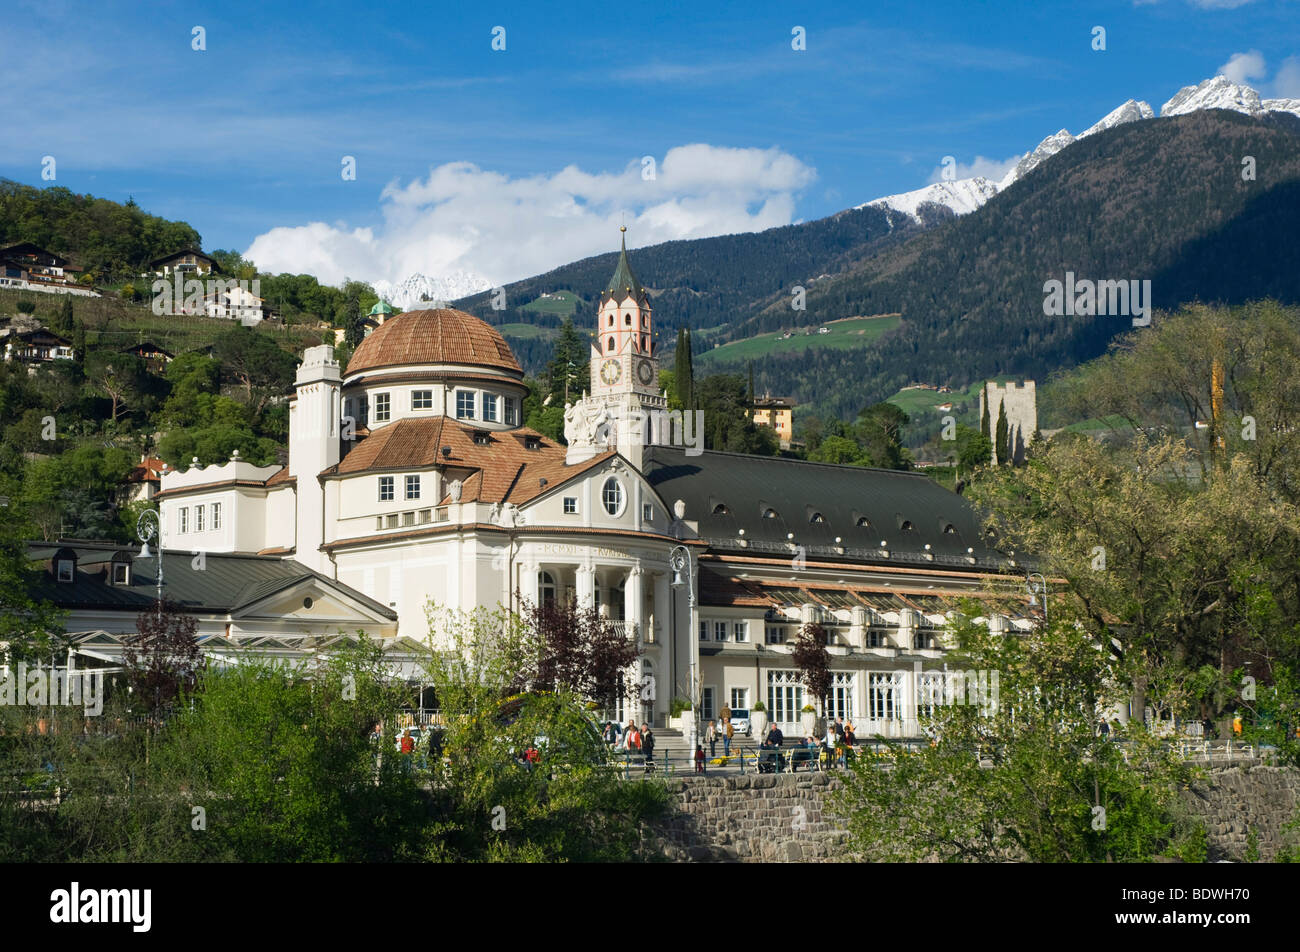 Spa hotel, Merano, Trentino, Alto Adige, Italy, Europe Stock Photo